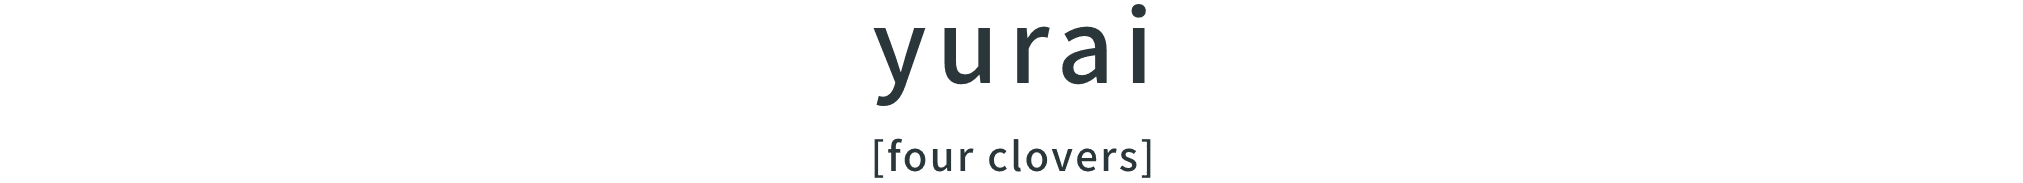 yurar[four clovers]